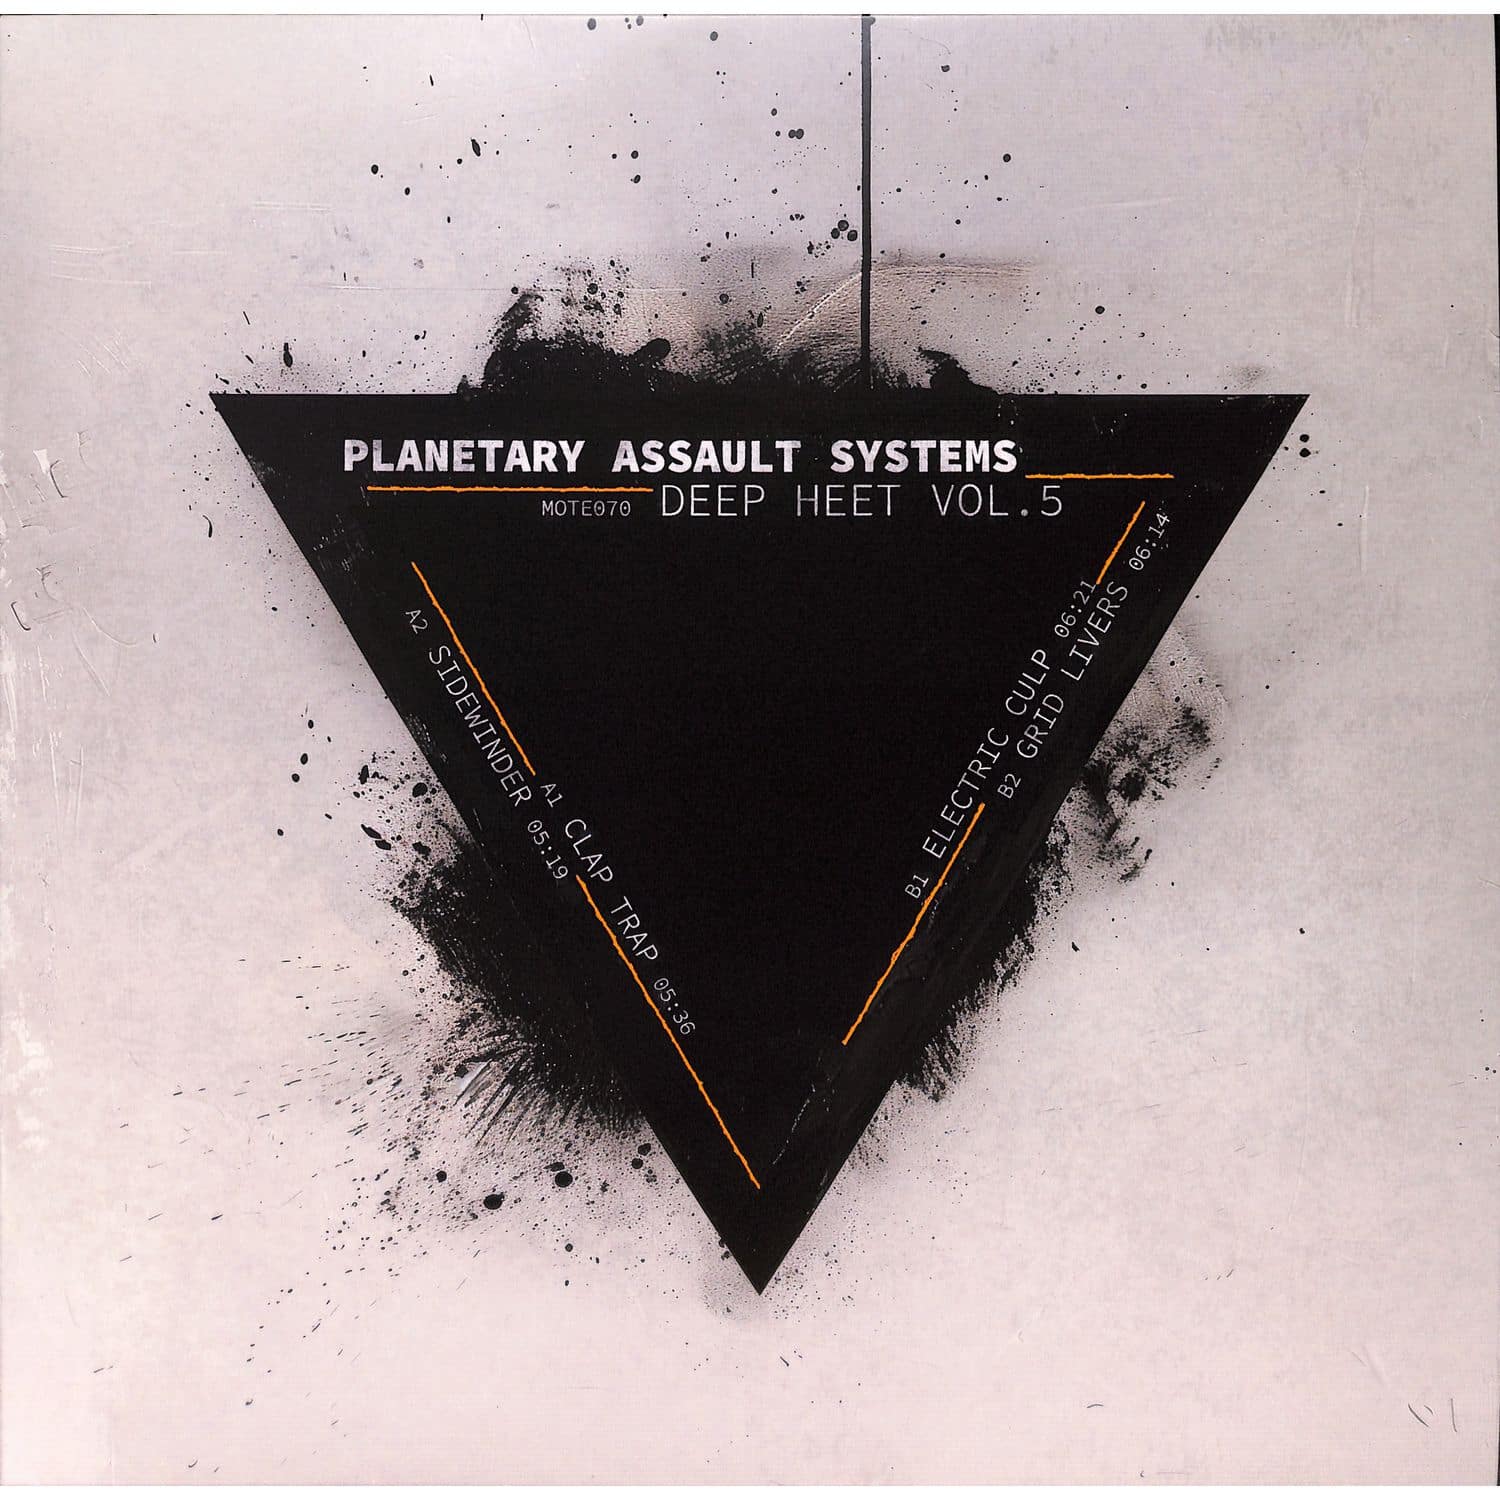 Planetary Assault Systems - DEEP HEET VOL. 5